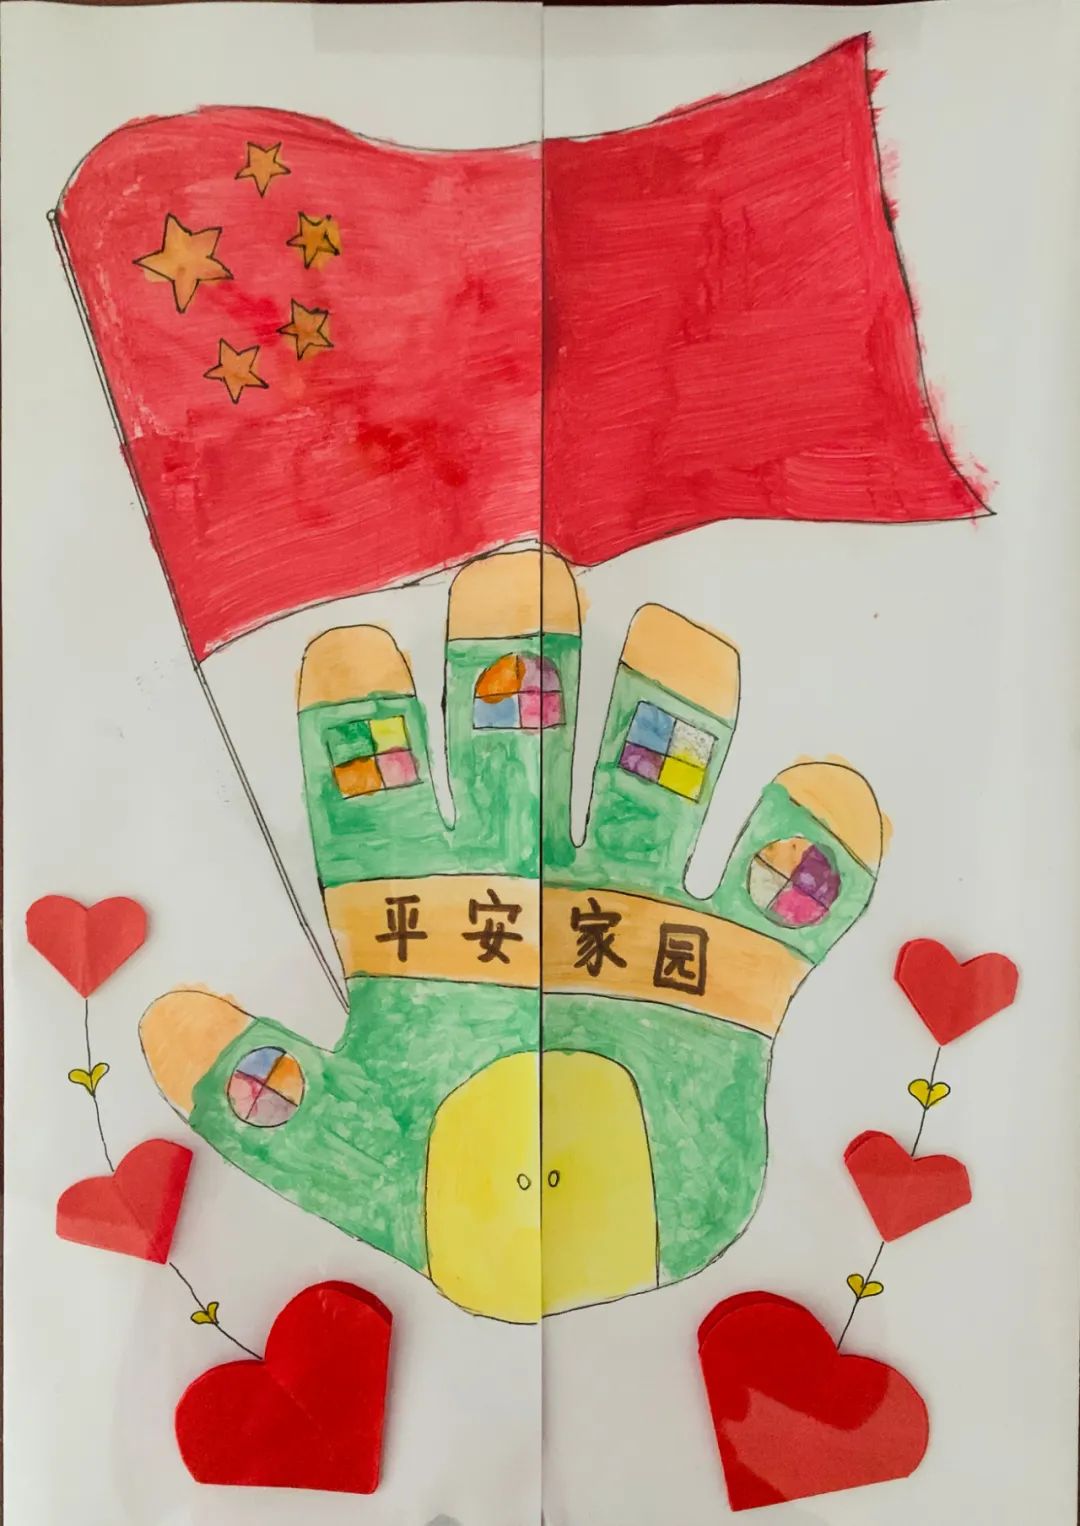 让少年儿童了解党的历史和我国红色文化的丰富内容,回顾中国发展进步